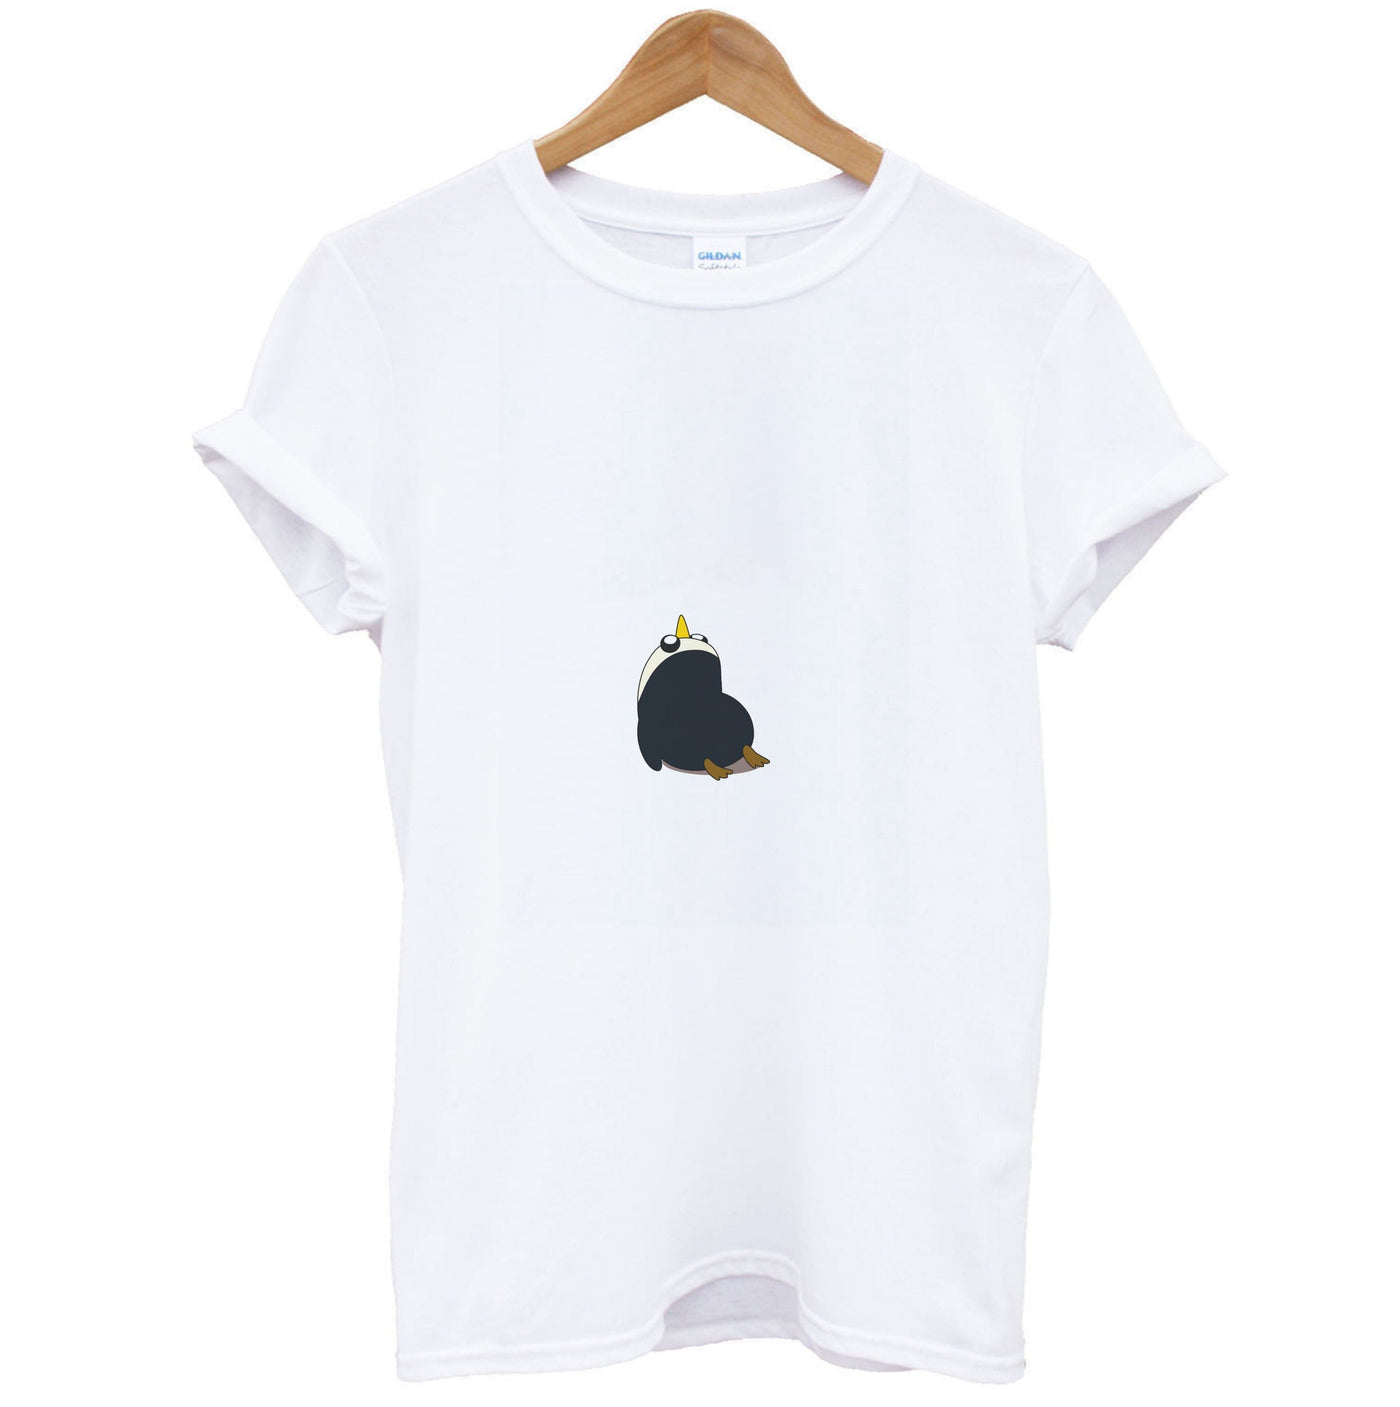 Penguins - Adventure Time T-Shirt